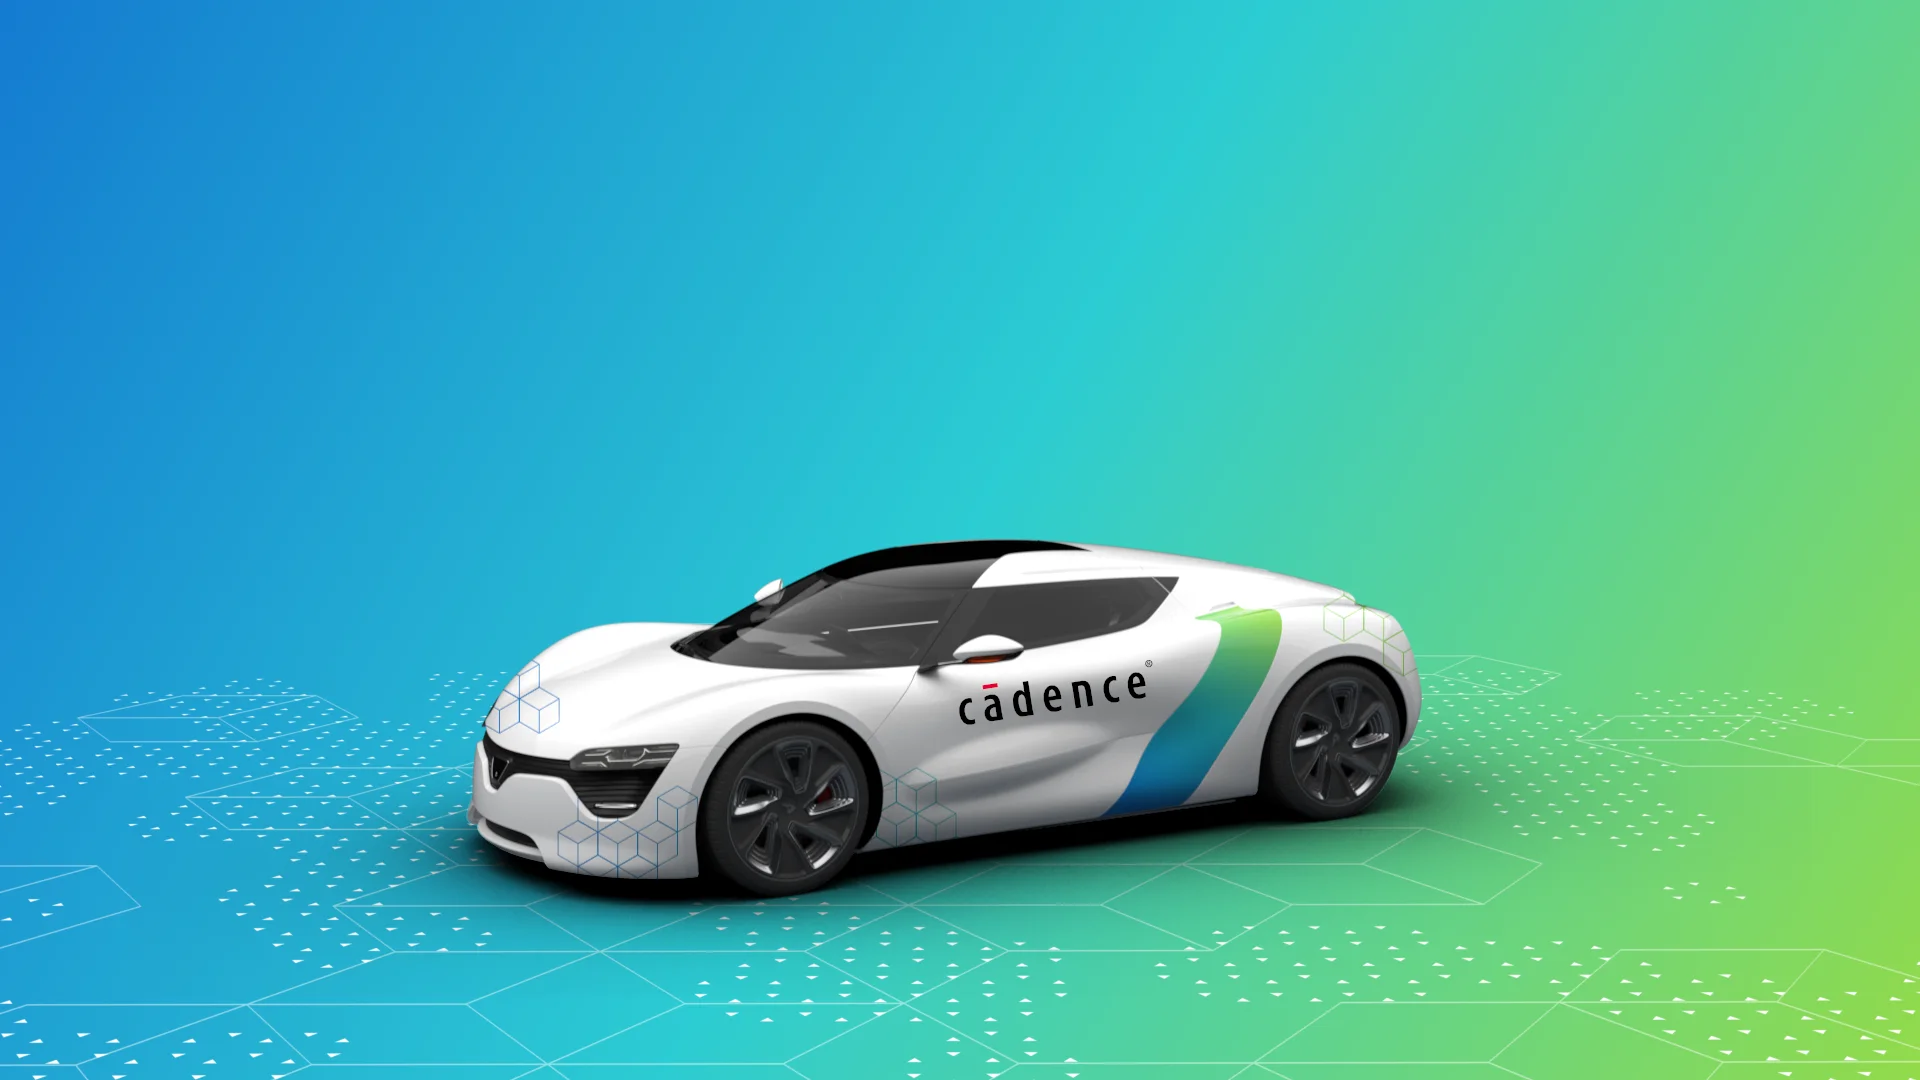 Cadence-Car-Design-02-02